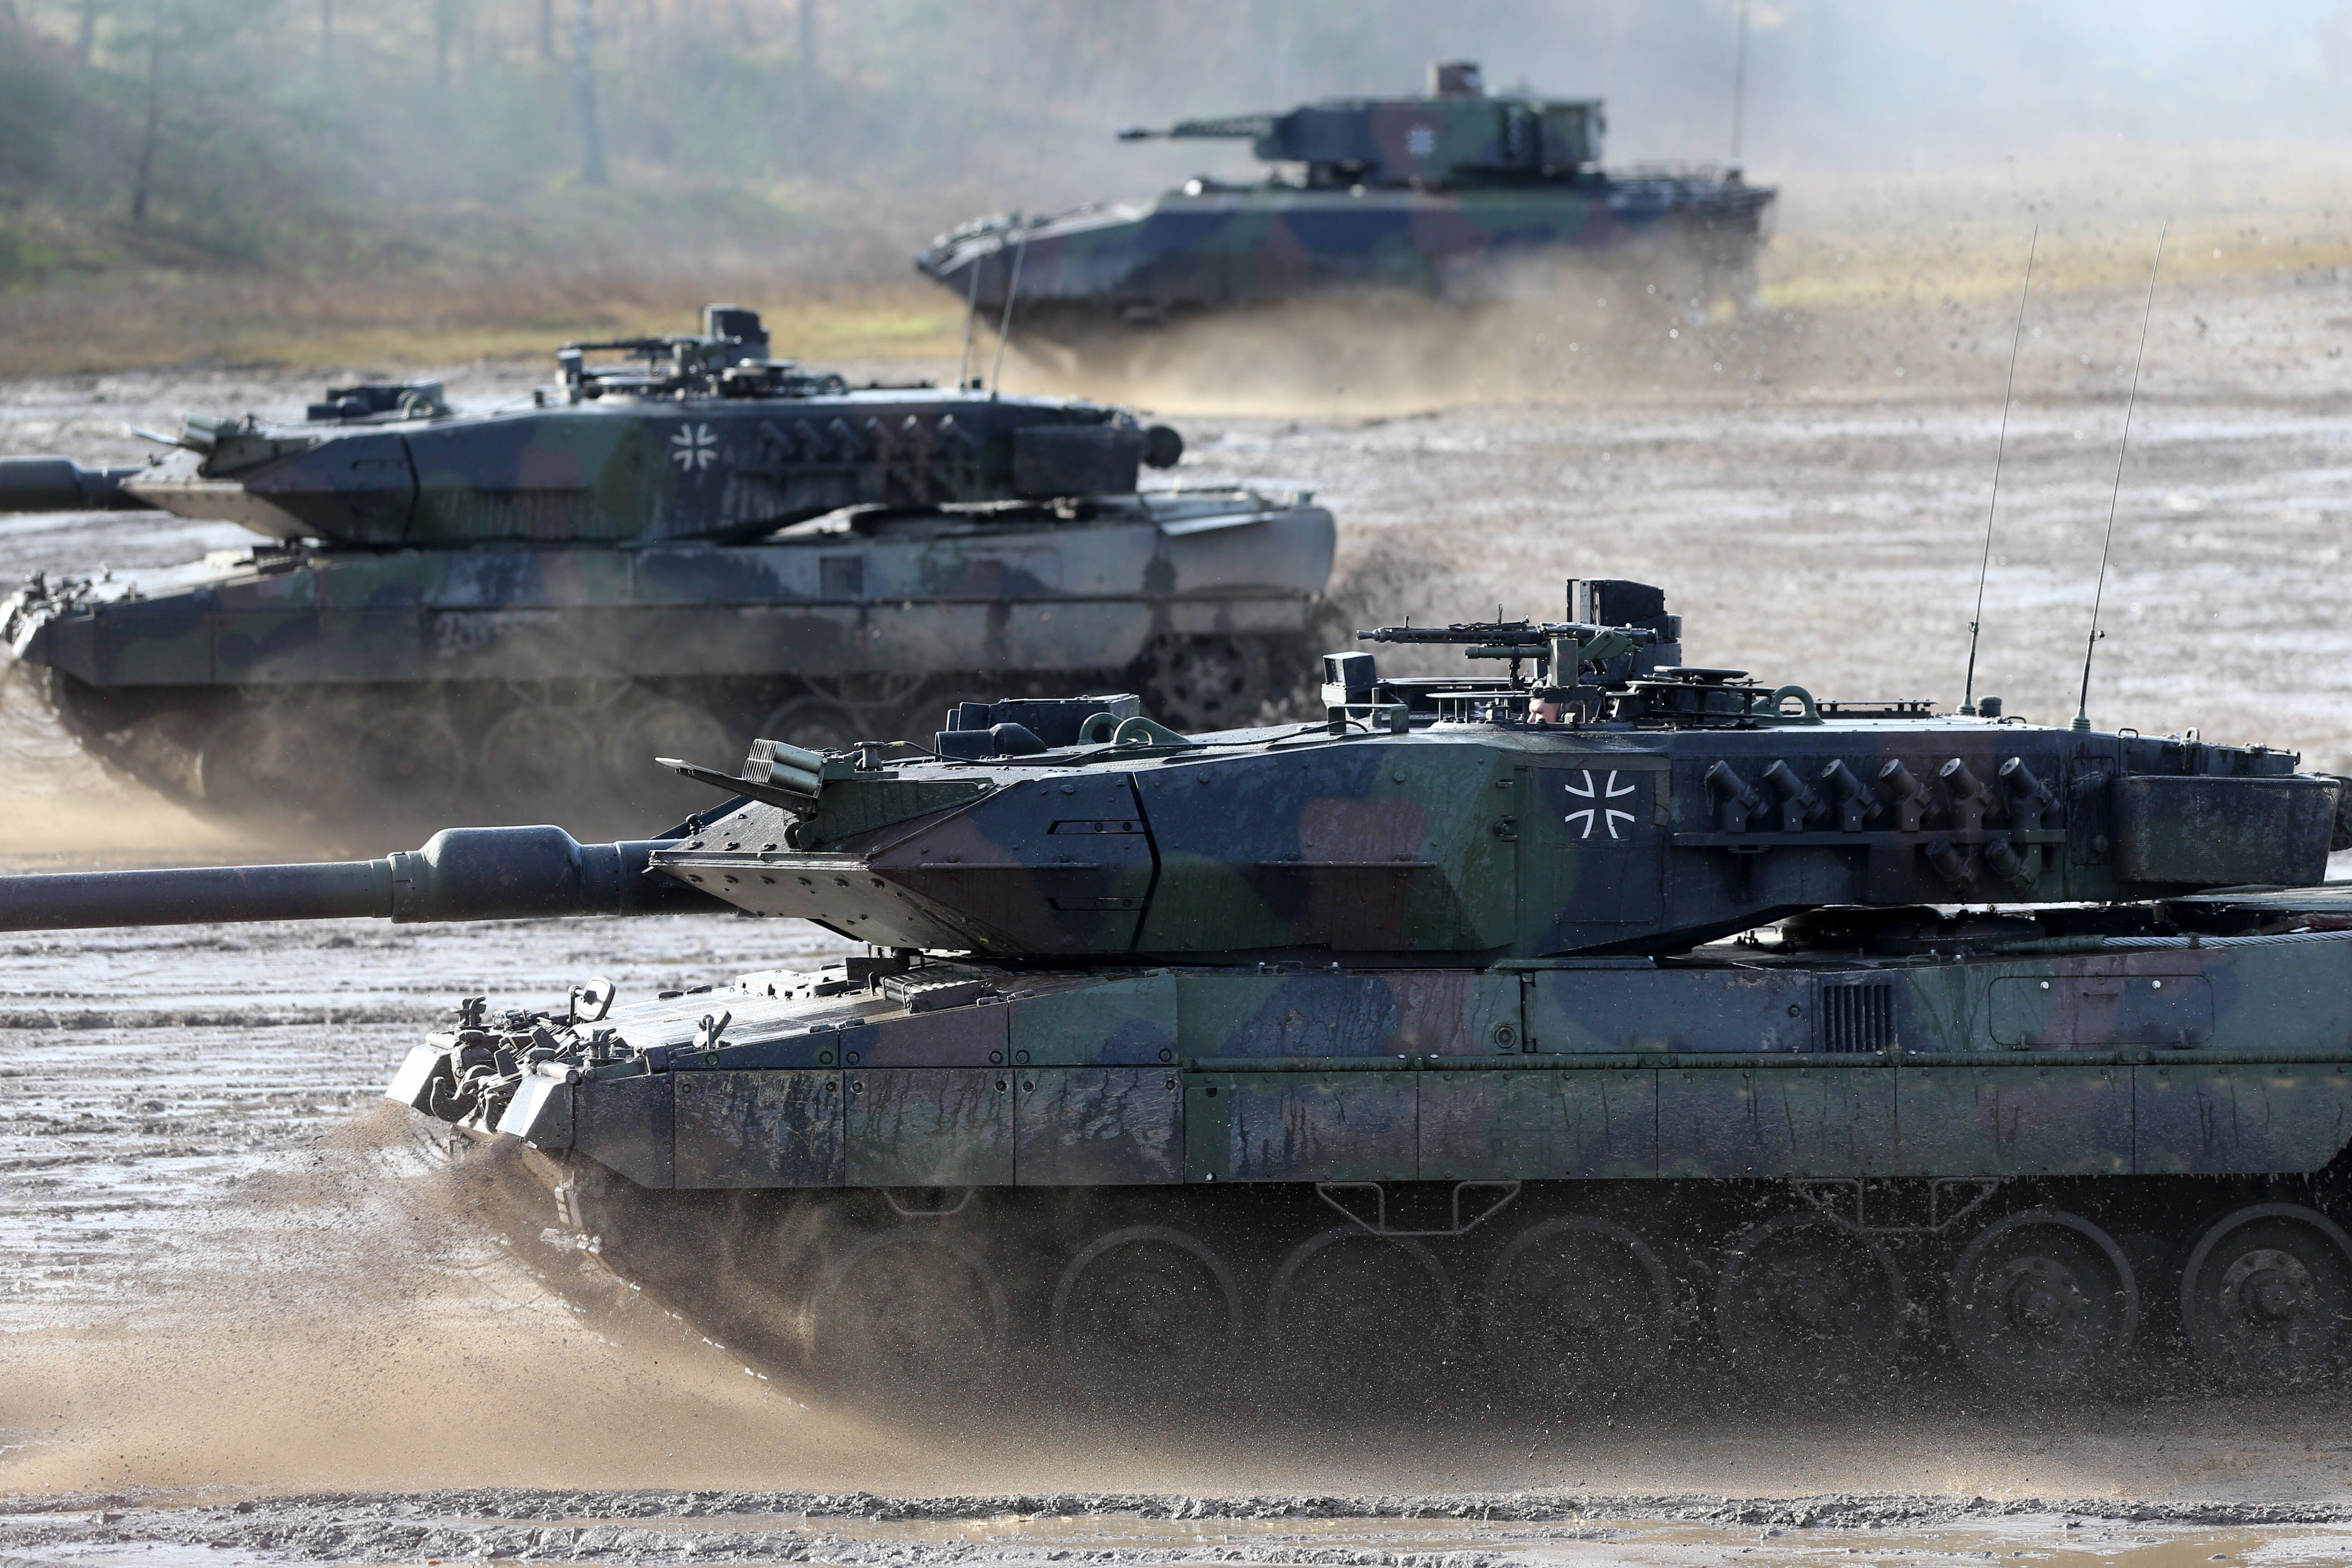 Bundeswehr probt für den Ernstfall - Video auf YouTube zeigt Panzer und Soldaten in Aktion!